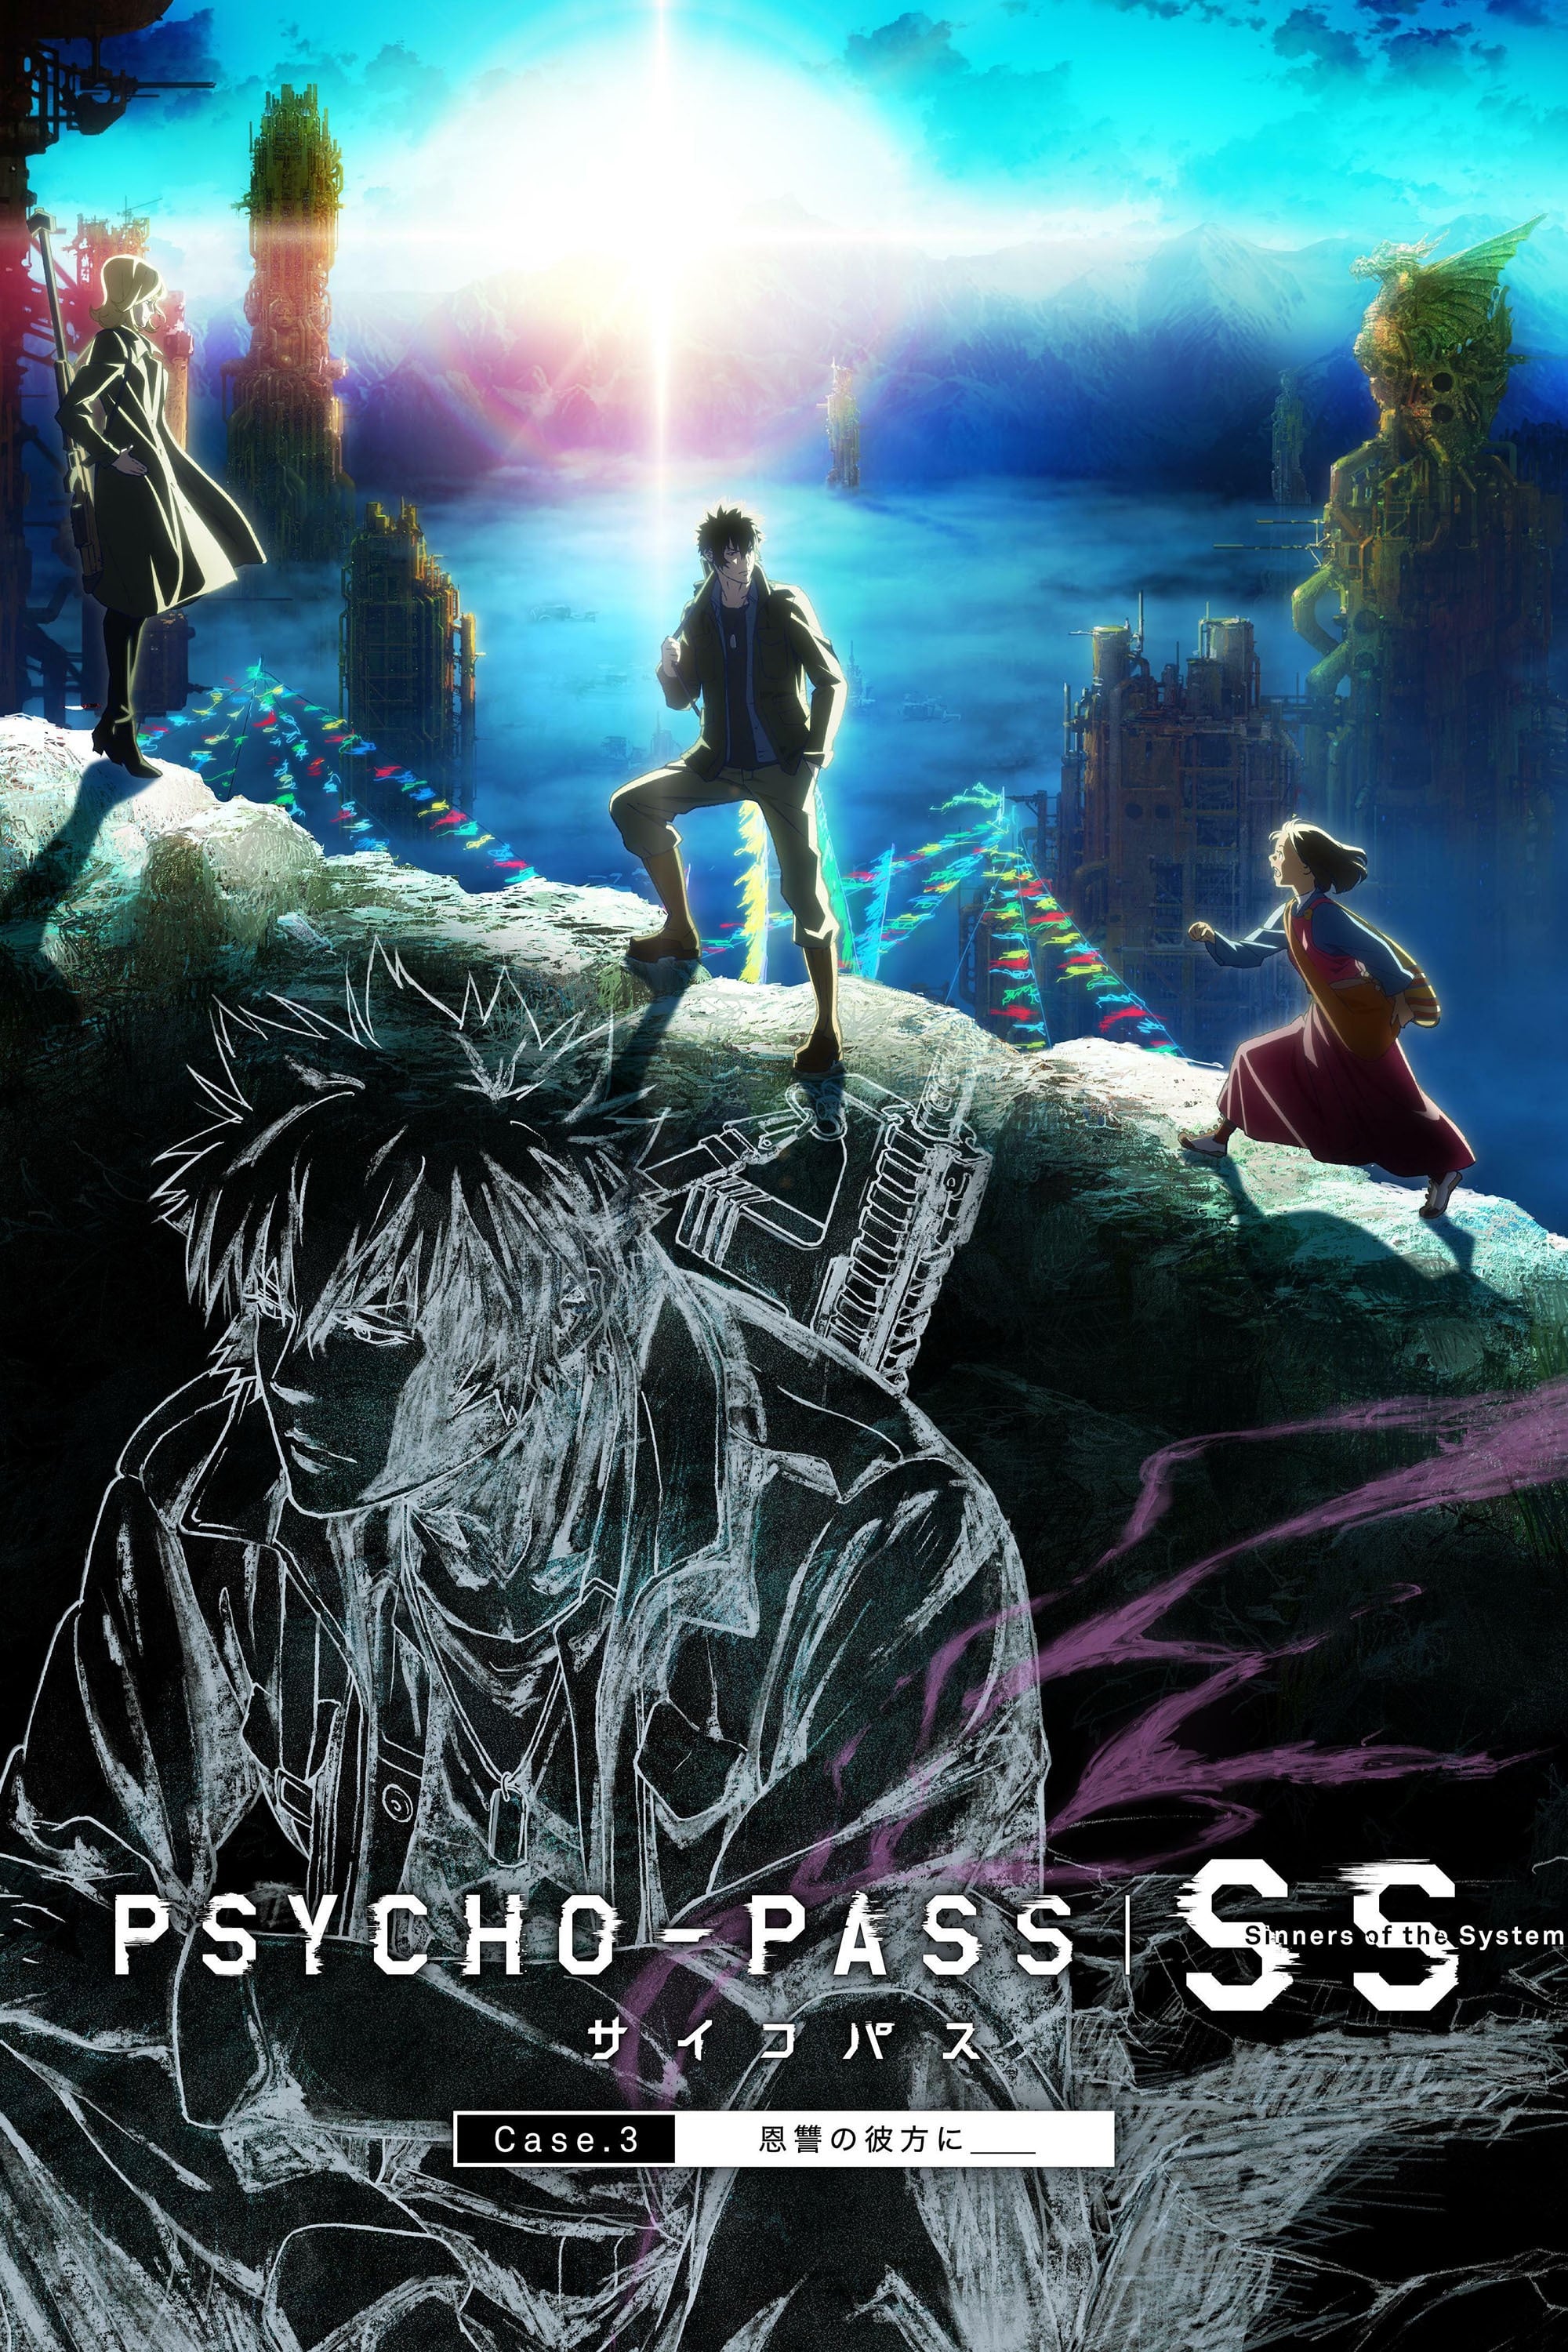 Psycho-Pass: Pecadores do Sistema Caso 3 - No Reino Além é ____ (2019)